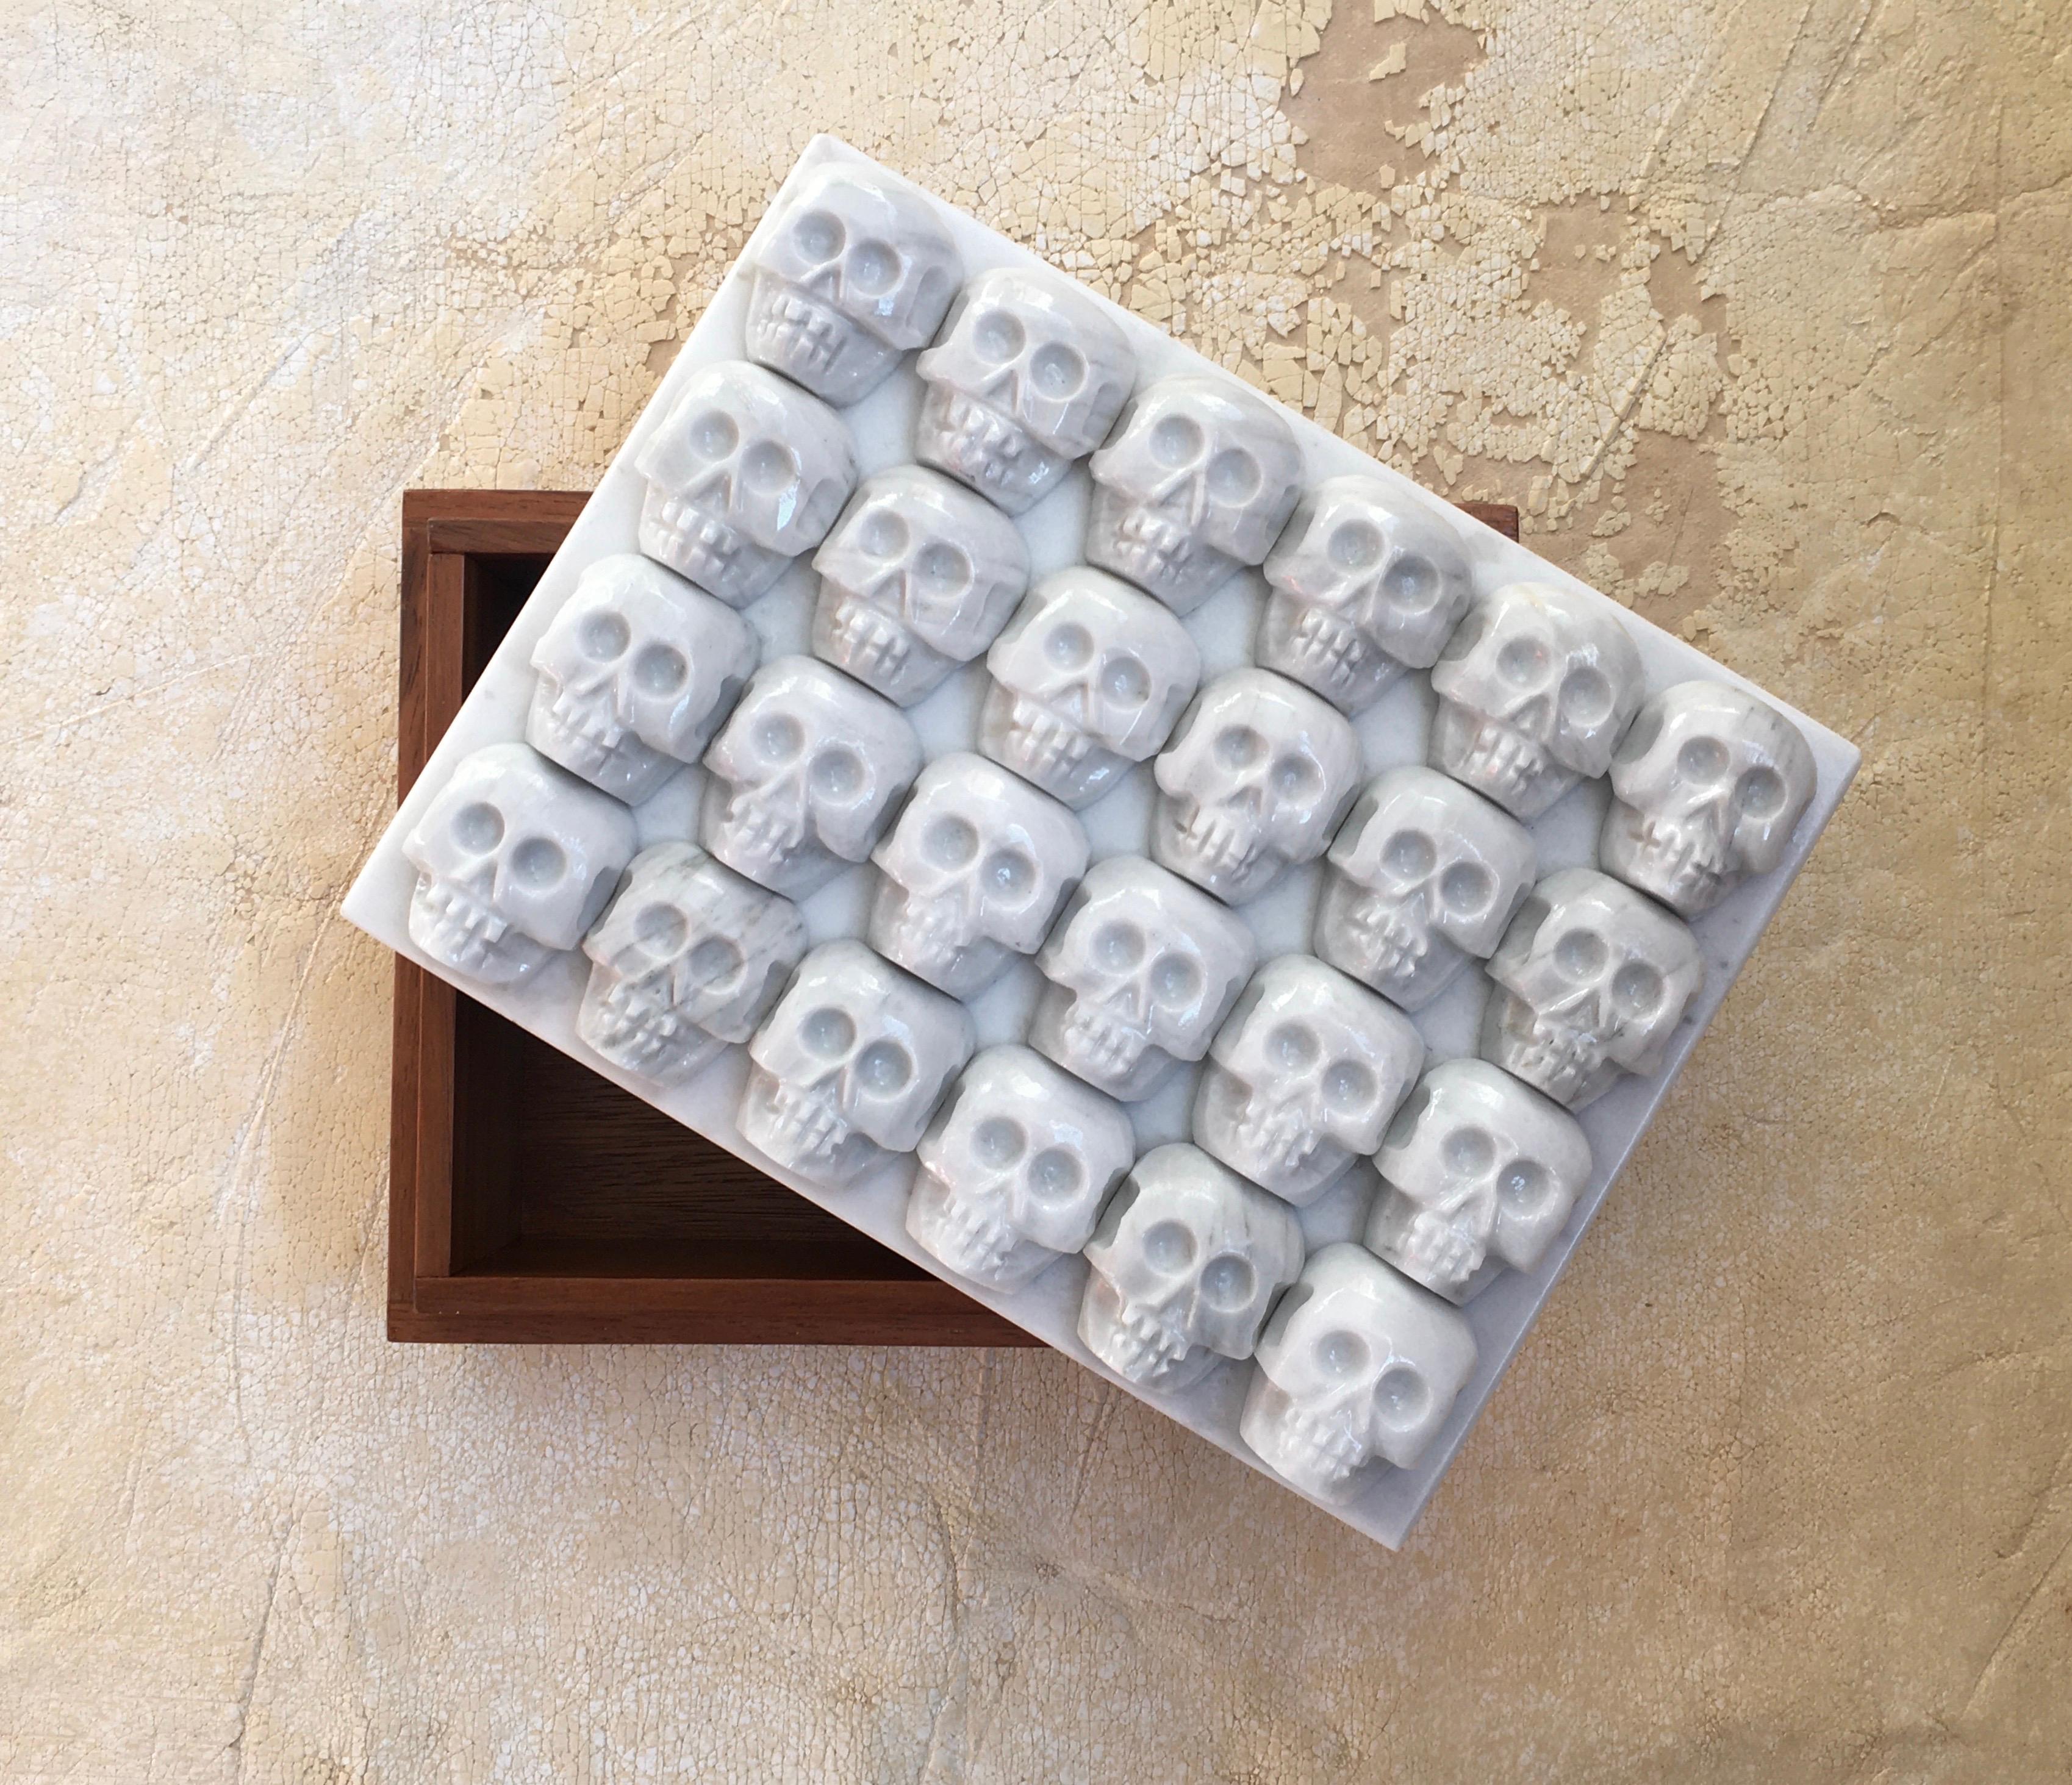 Die Schachtel „Zzompantli“ von Onora
Abmessungen: 25 x 25 x 18 cm
Materialien: geschnitzter Obsidian oder Marmor.

Die Tzompantli-Schachtel bezieht sich auf die Altare, die zu Ehren der menschlichen Opfer der spanischen Götter errichtet wurden.